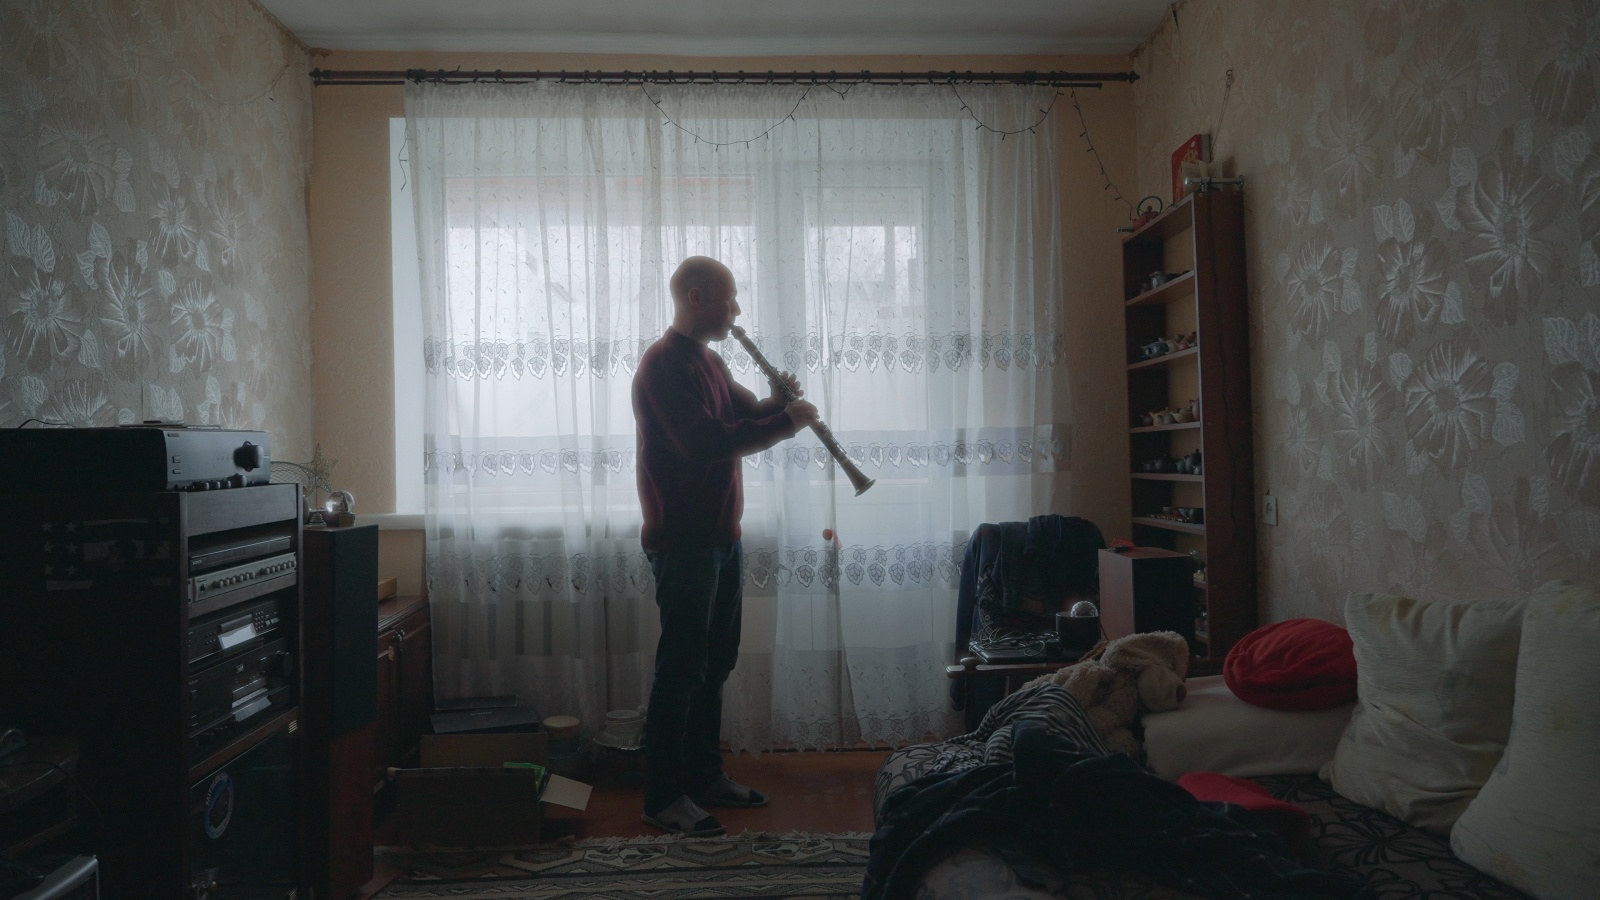 rus: Чоловік стоїть посеред кімнати та грає на кларнеті.